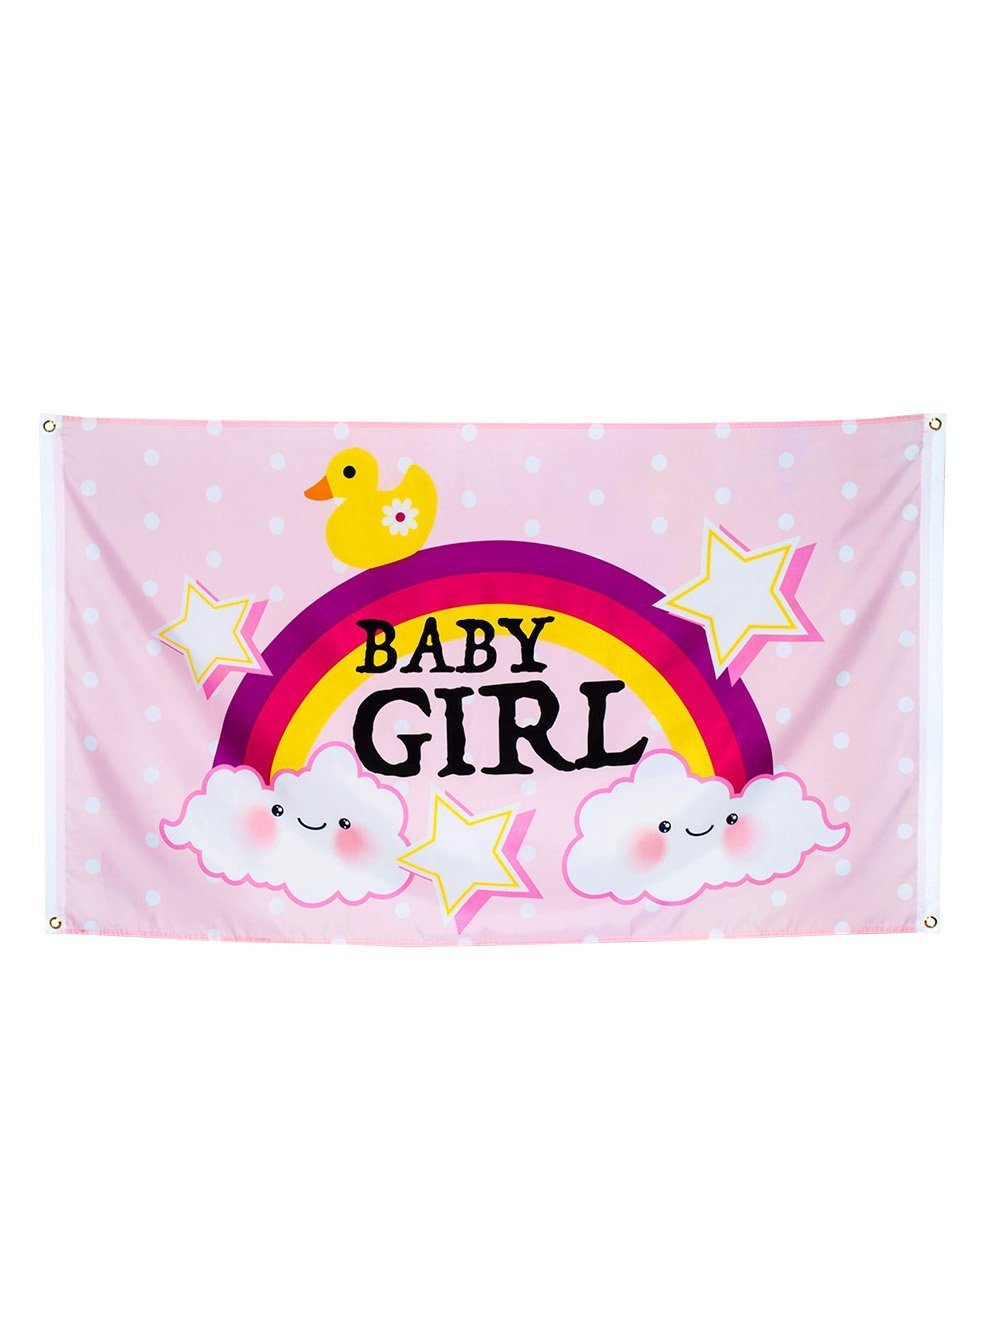 Boland Hängedekoration Baby Girl Fahne, Raumdeko für Geburt, Babygeburtstag oder Pullerparty!